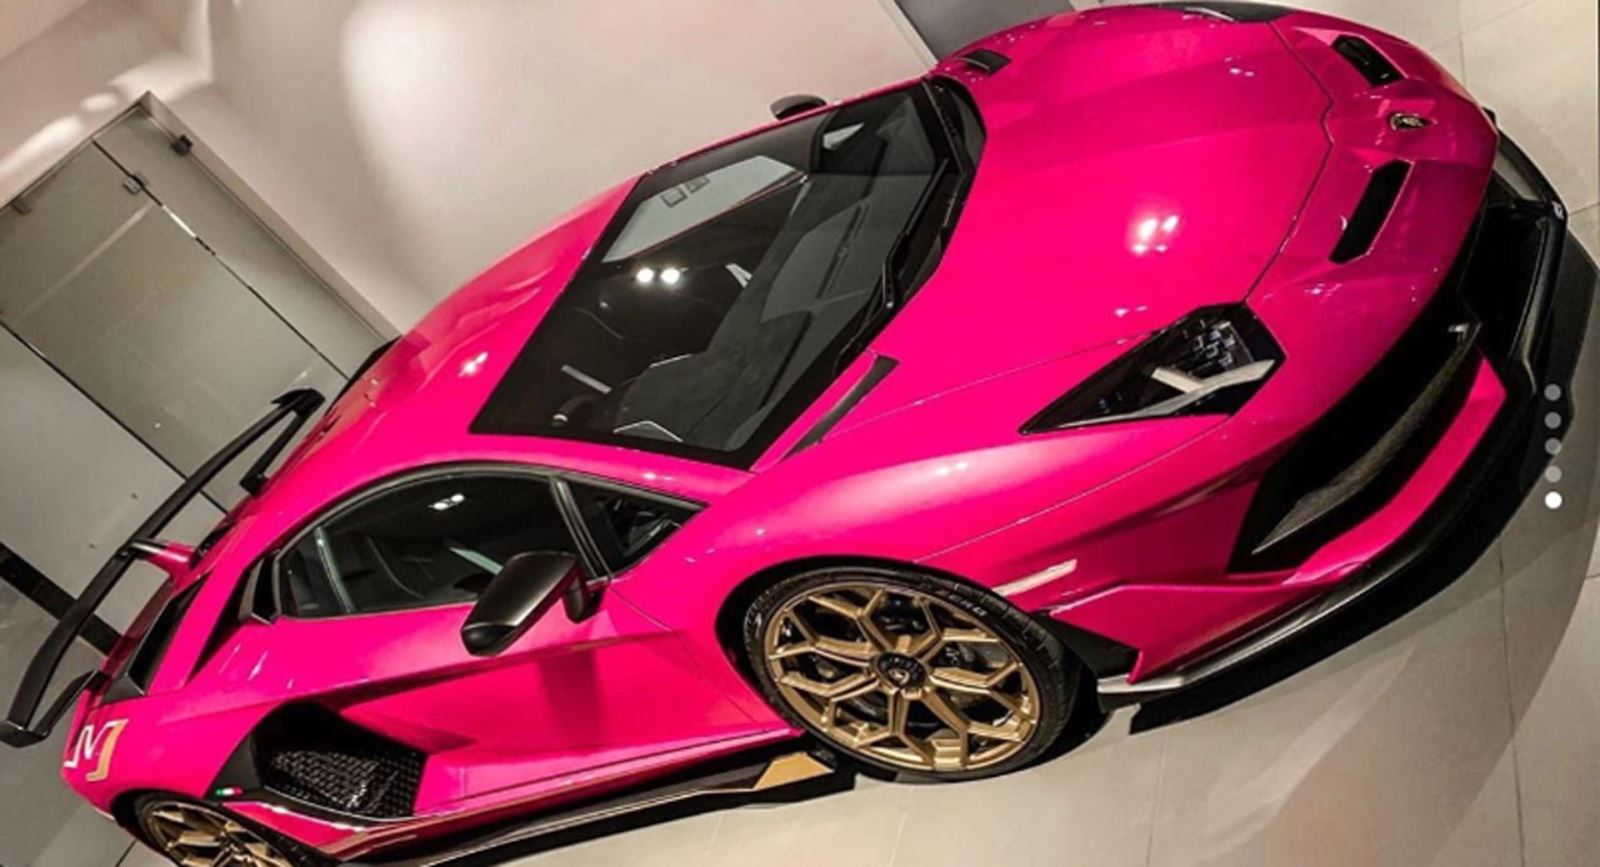 Thú chơi xe - Chiêm ngưỡng Lamborghini Aventador SVJ màu hồng siêu biến hóa